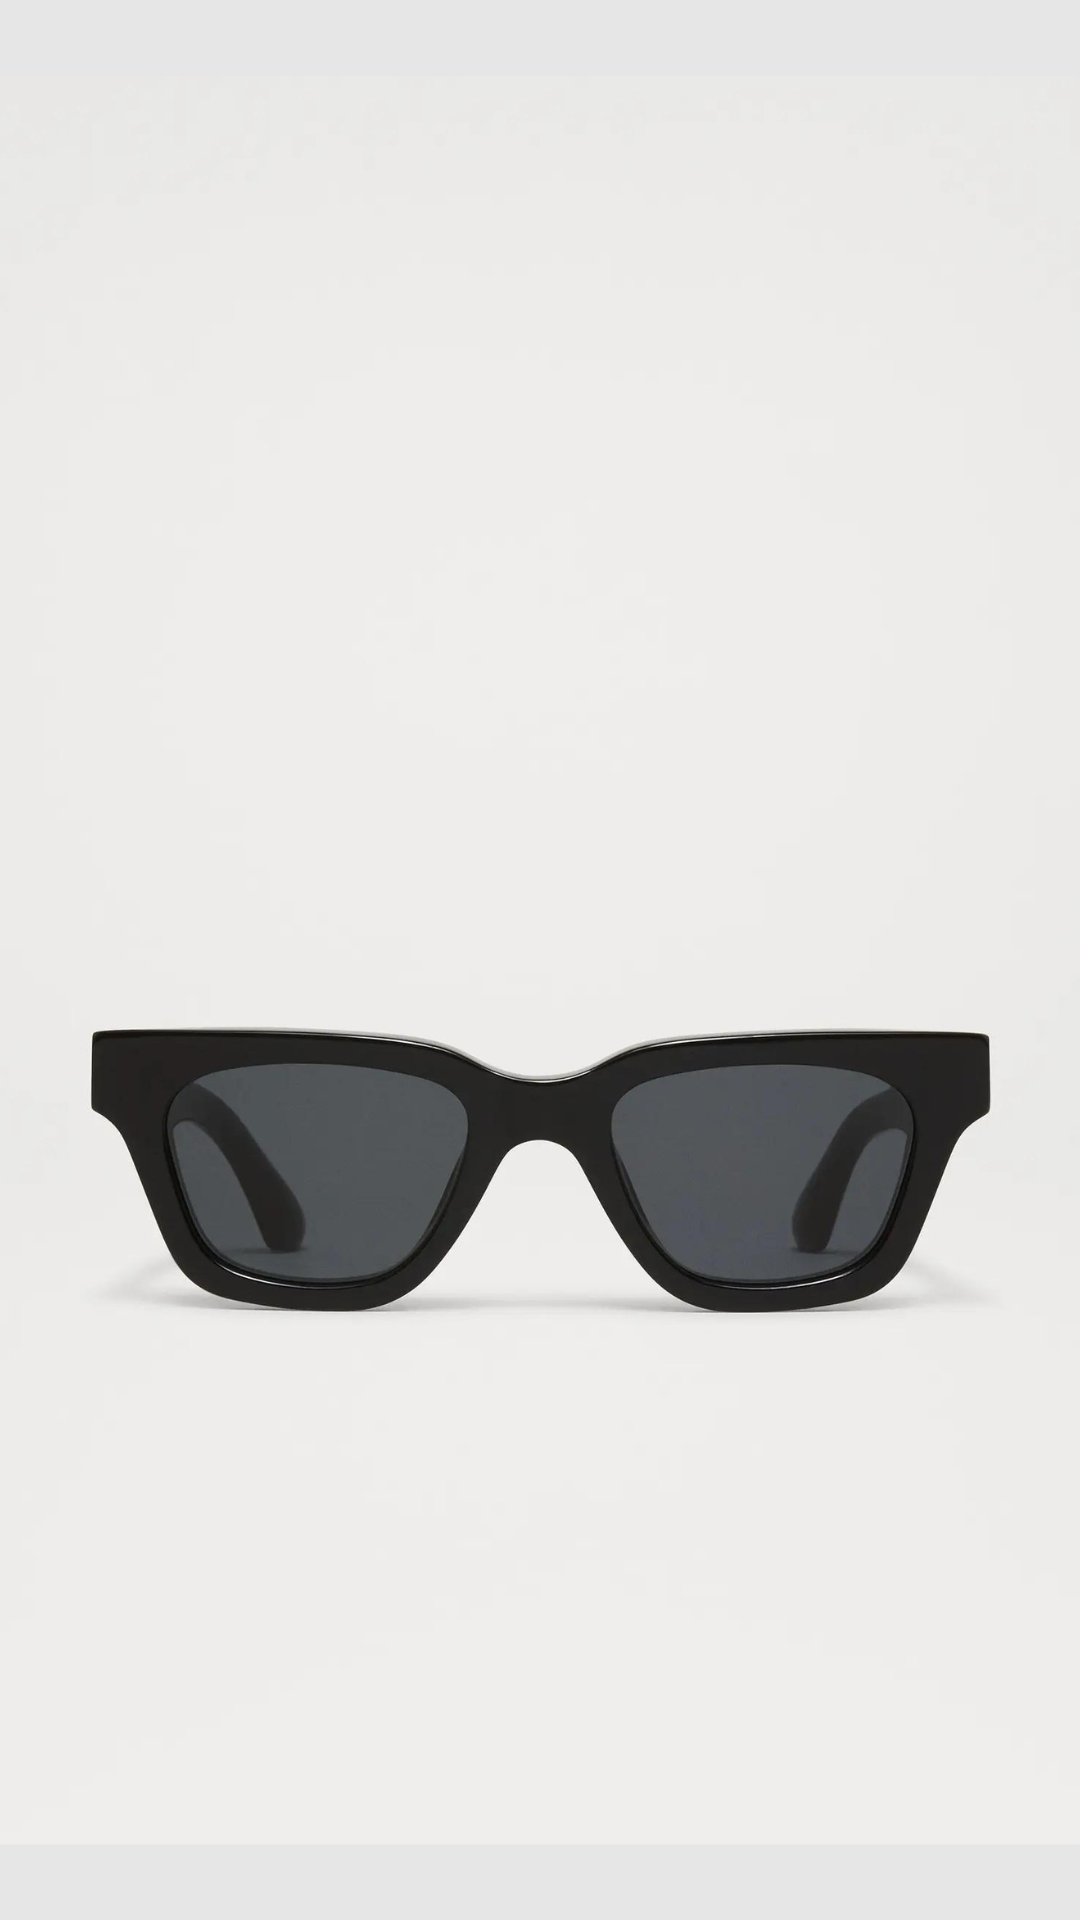 CHIMI Core 11 Sunglasses